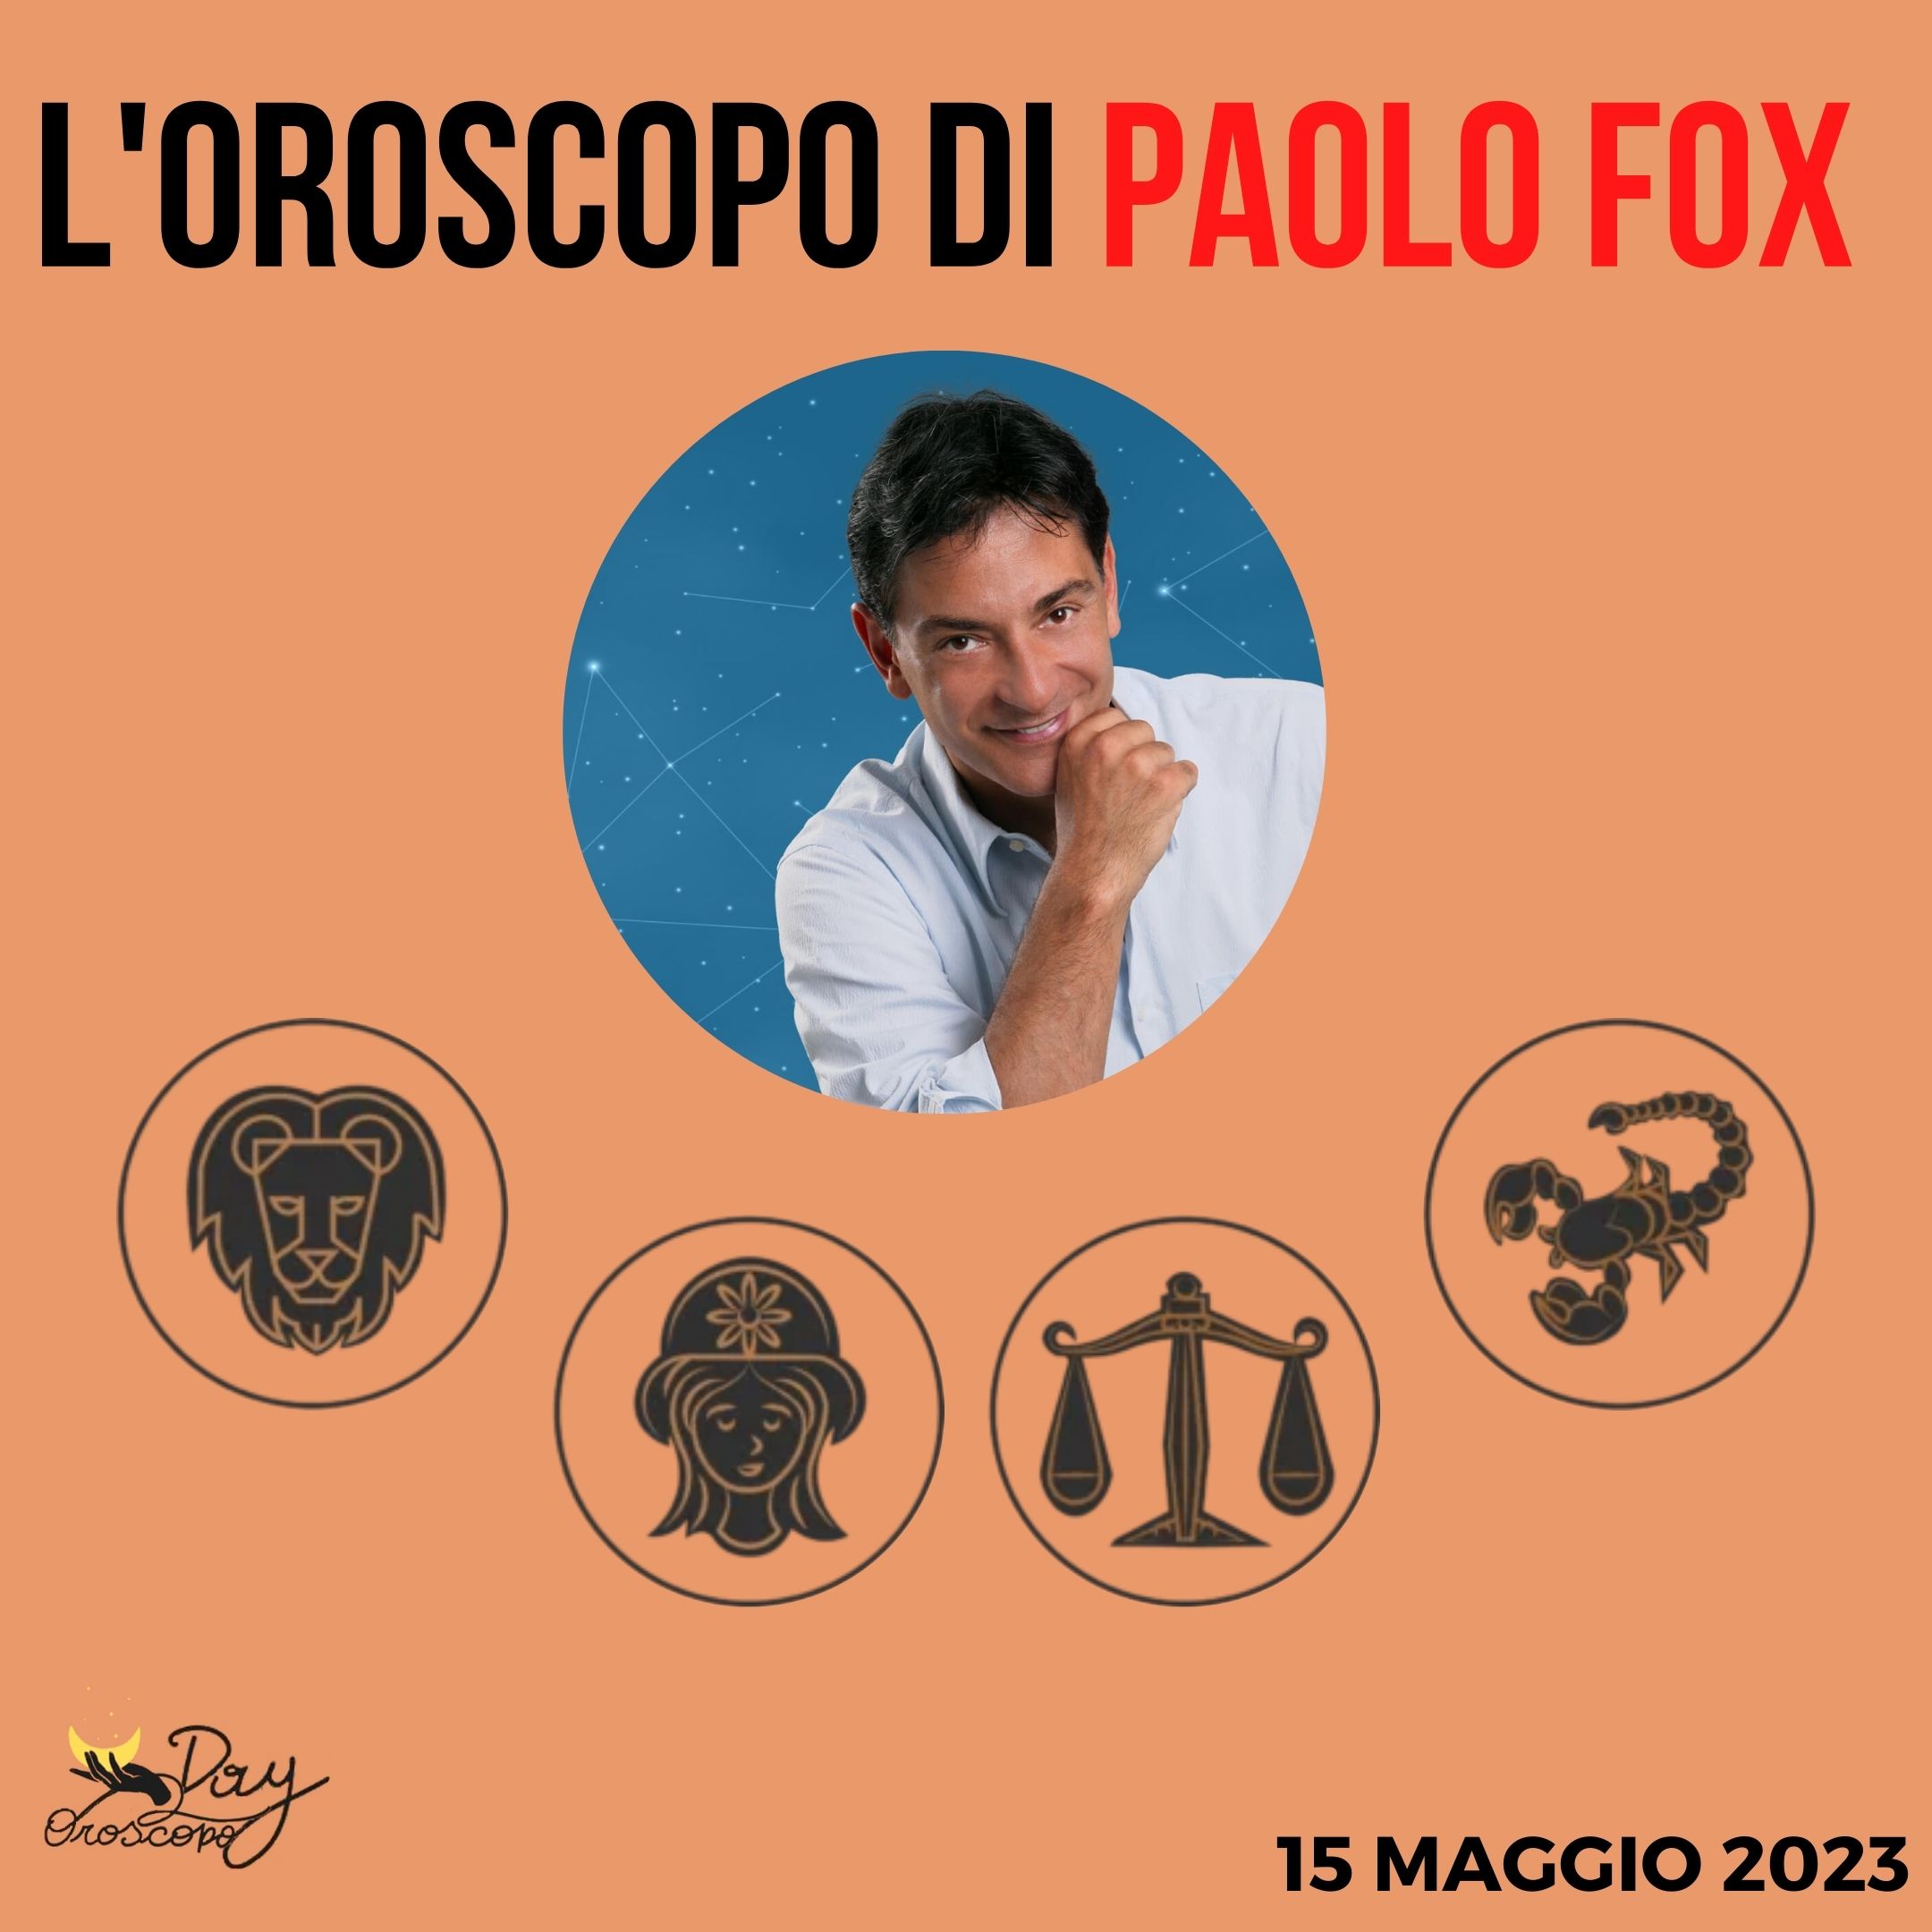 Oroscopo oggi domani Paolo Fox 15 maggio Leone Vergine Bilancia Scorpione